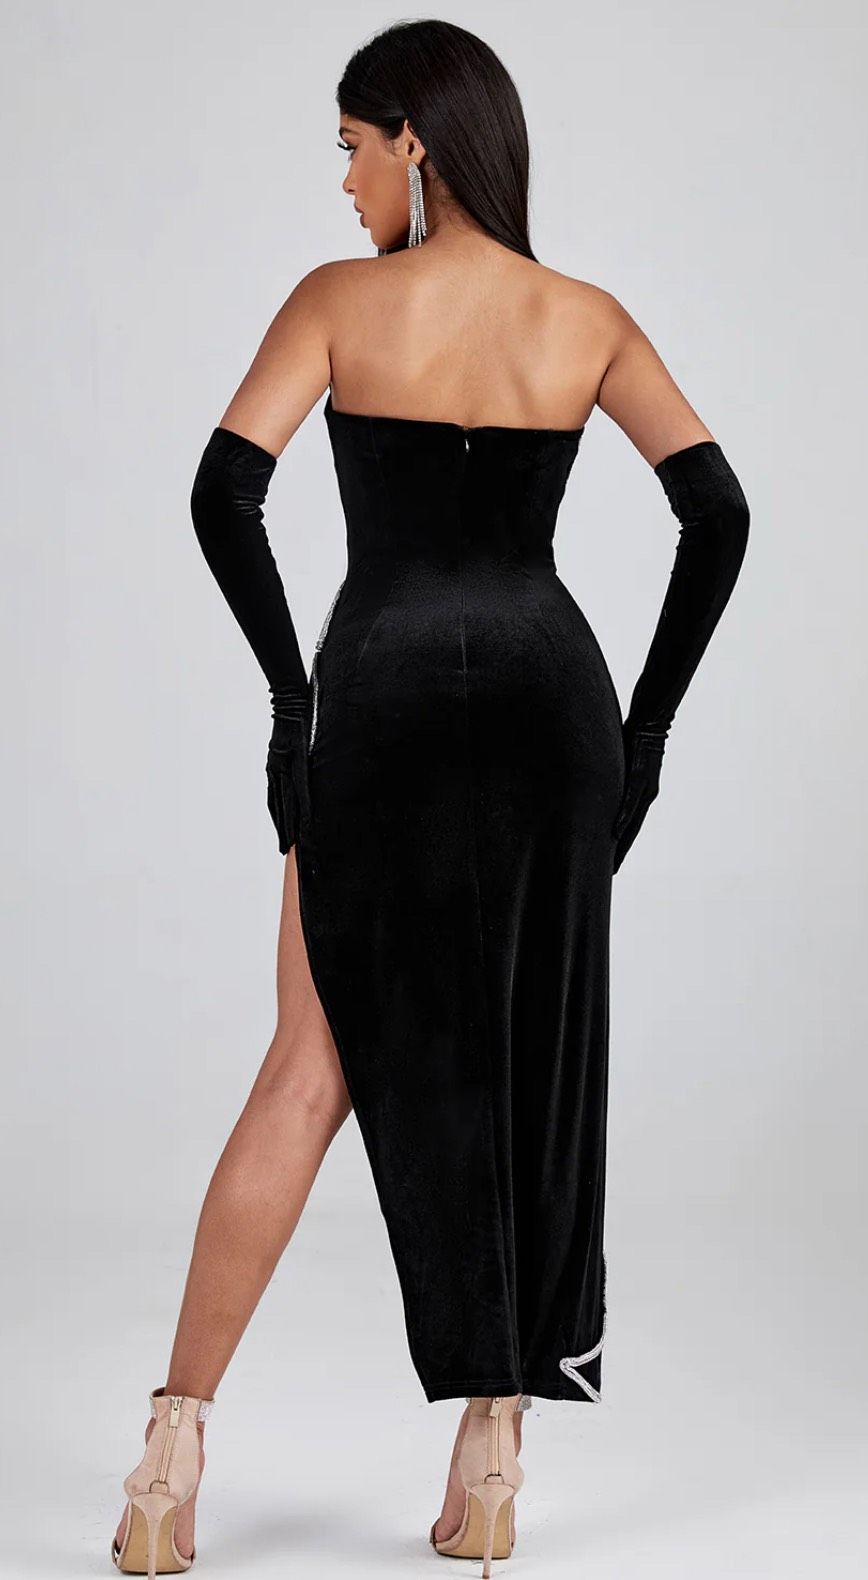 Style Asymmetric Backless Velvet Dress with Gloves Wolddress Size XS Strapless Velvet Black Side Slit Dress on Queenly